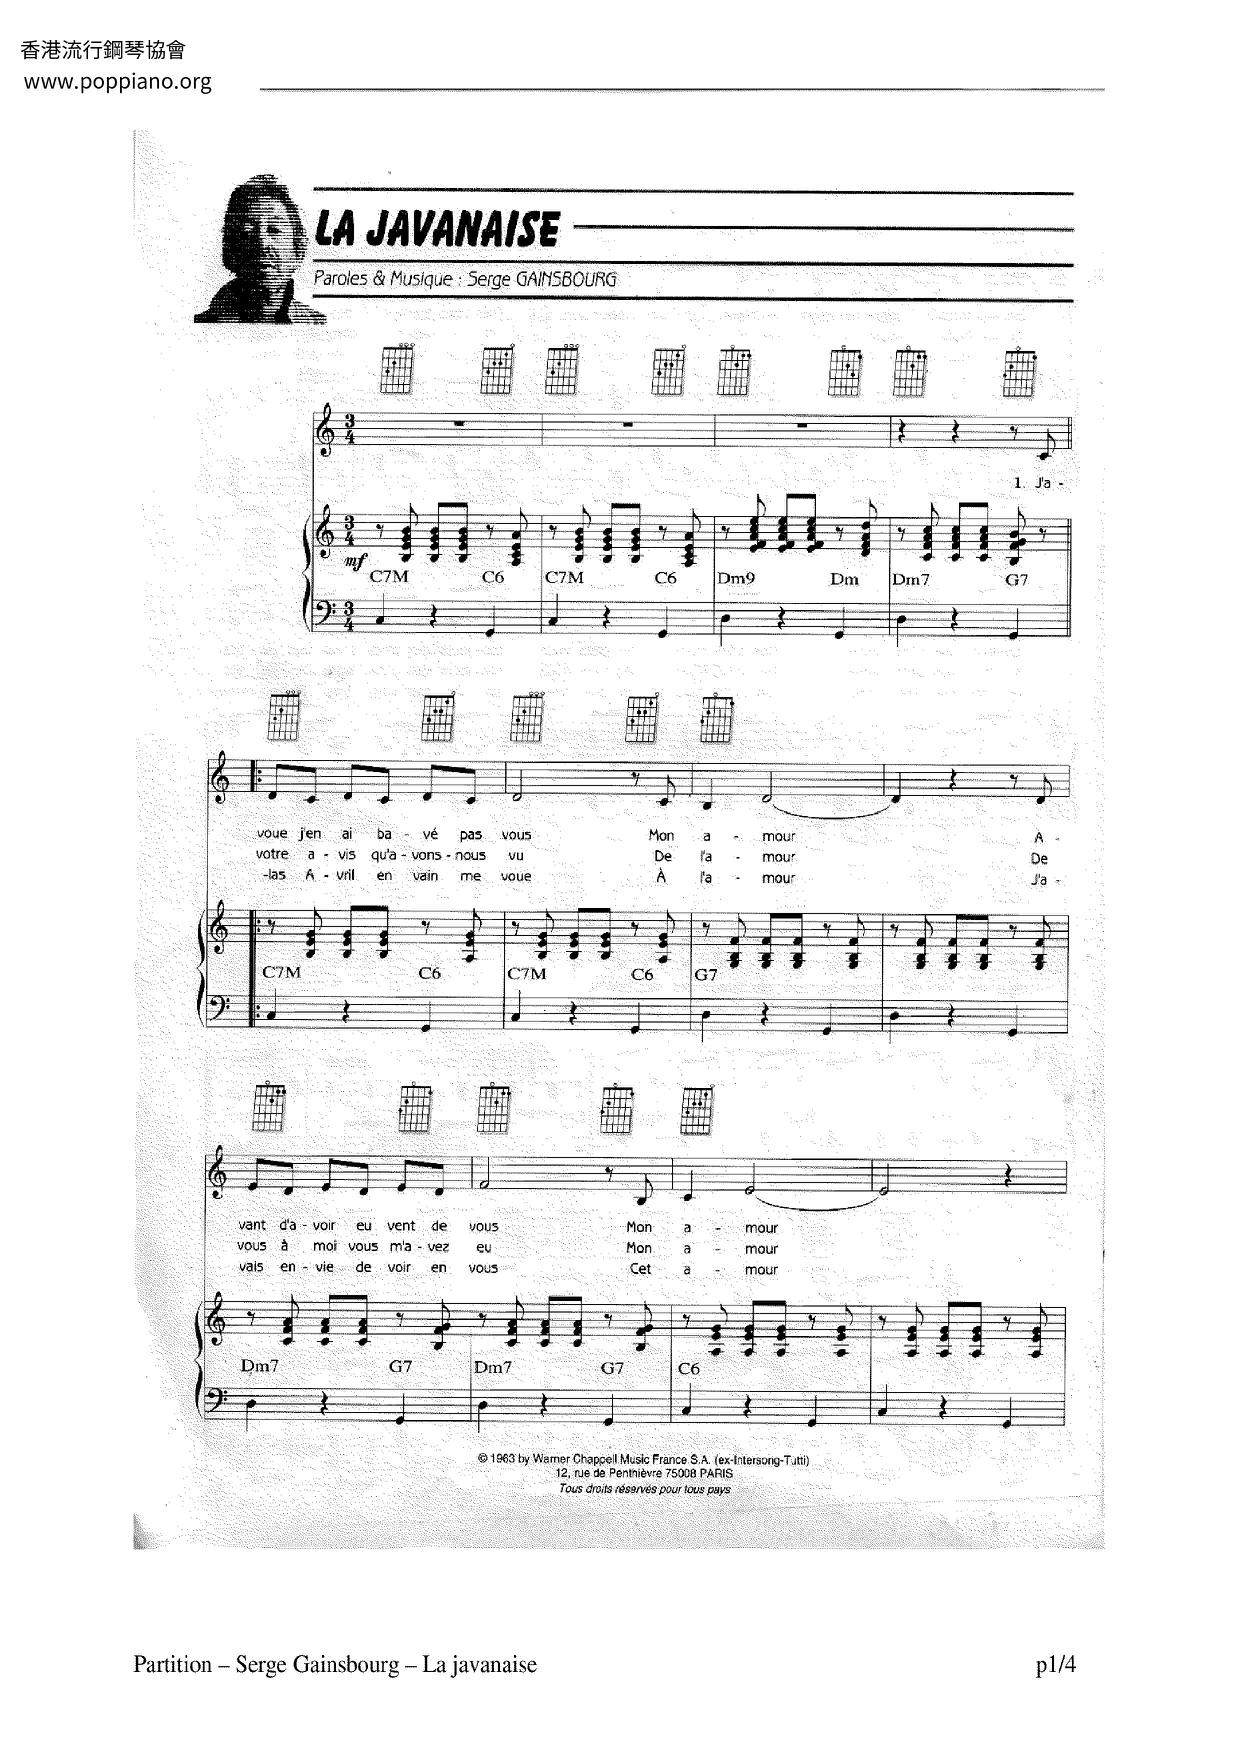 La Javanaiseピアノ譜